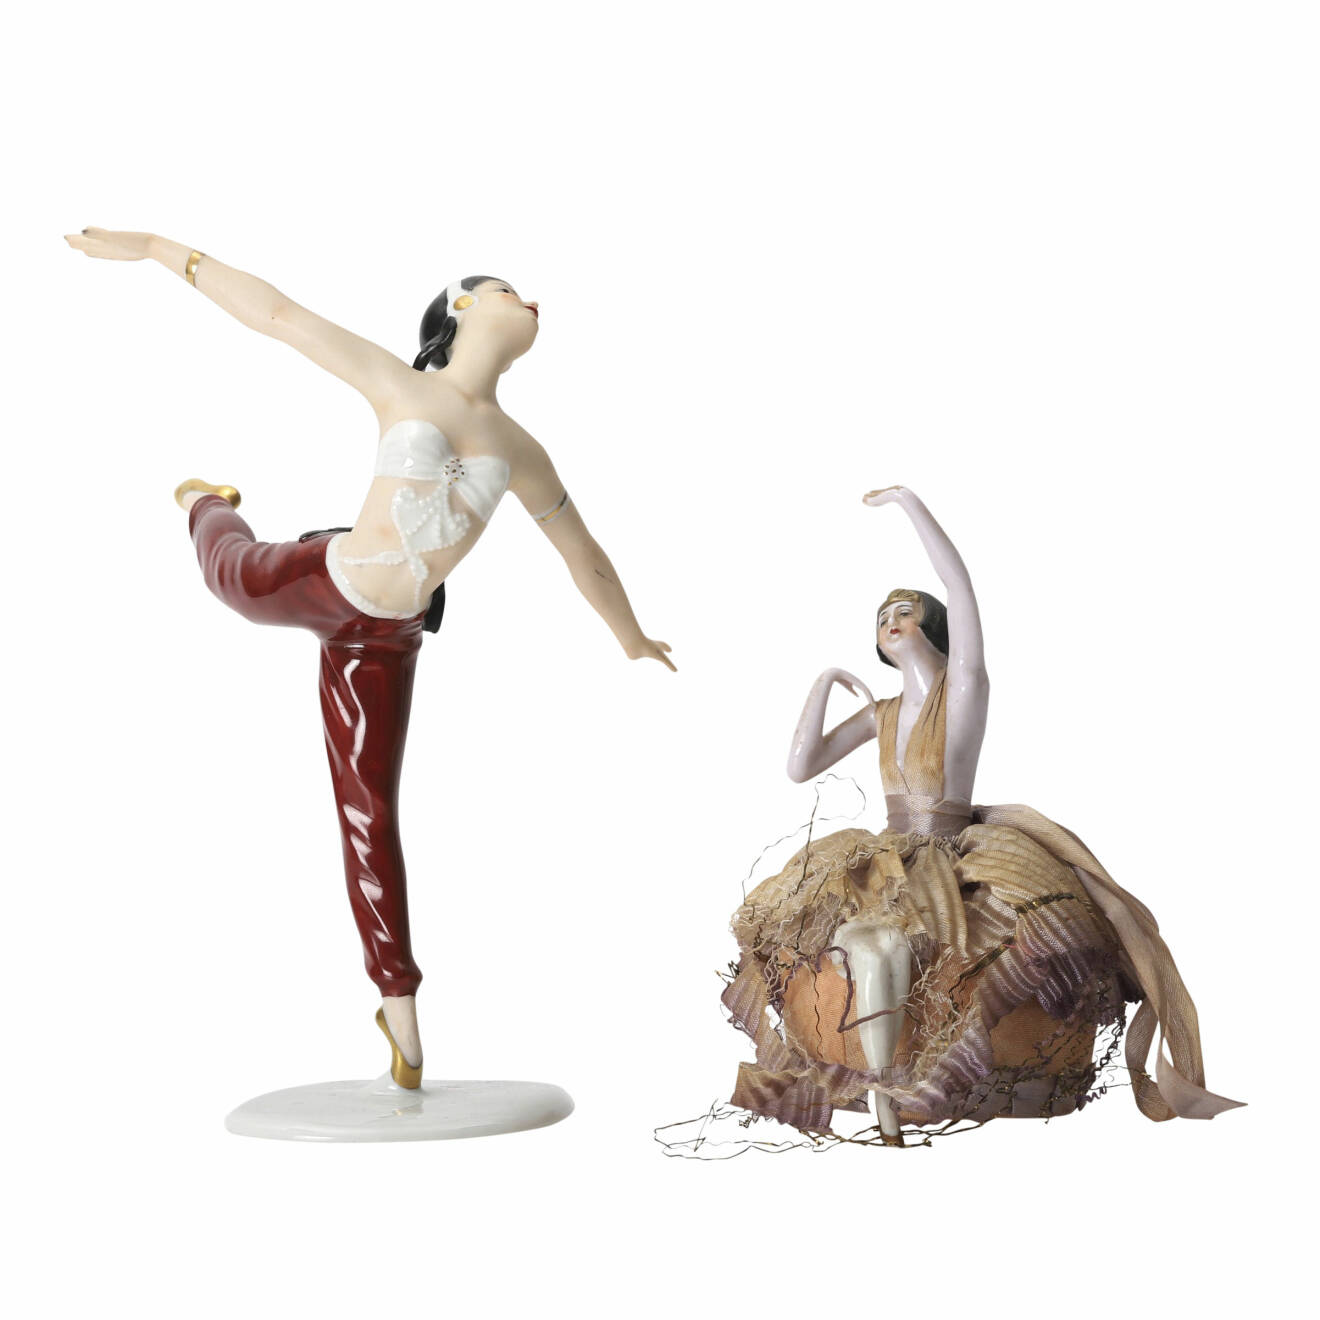 Två figuriner föreställande dansande kvinnor.